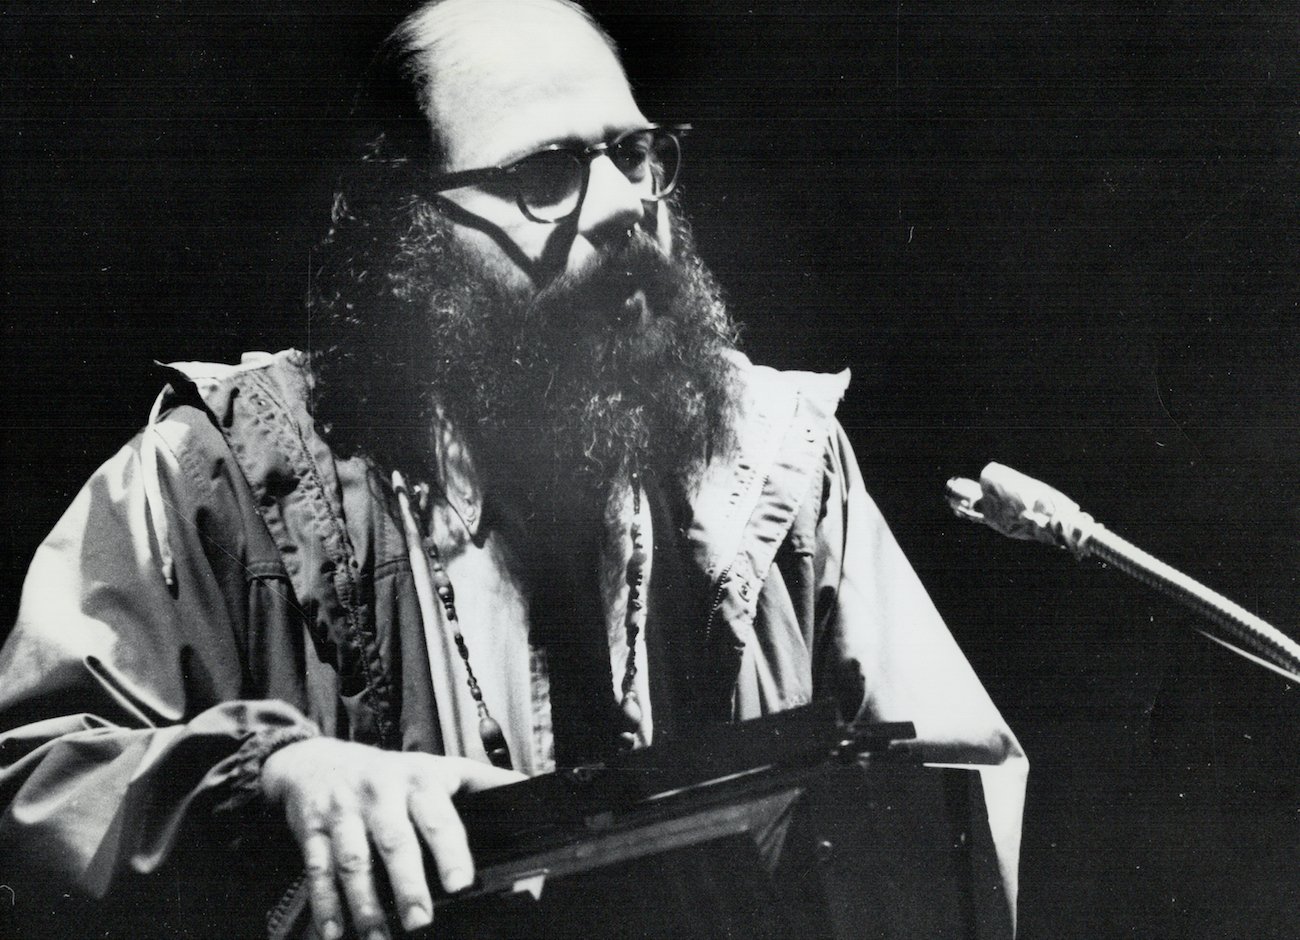 Allen Ginsberg in a jacket in 1969.